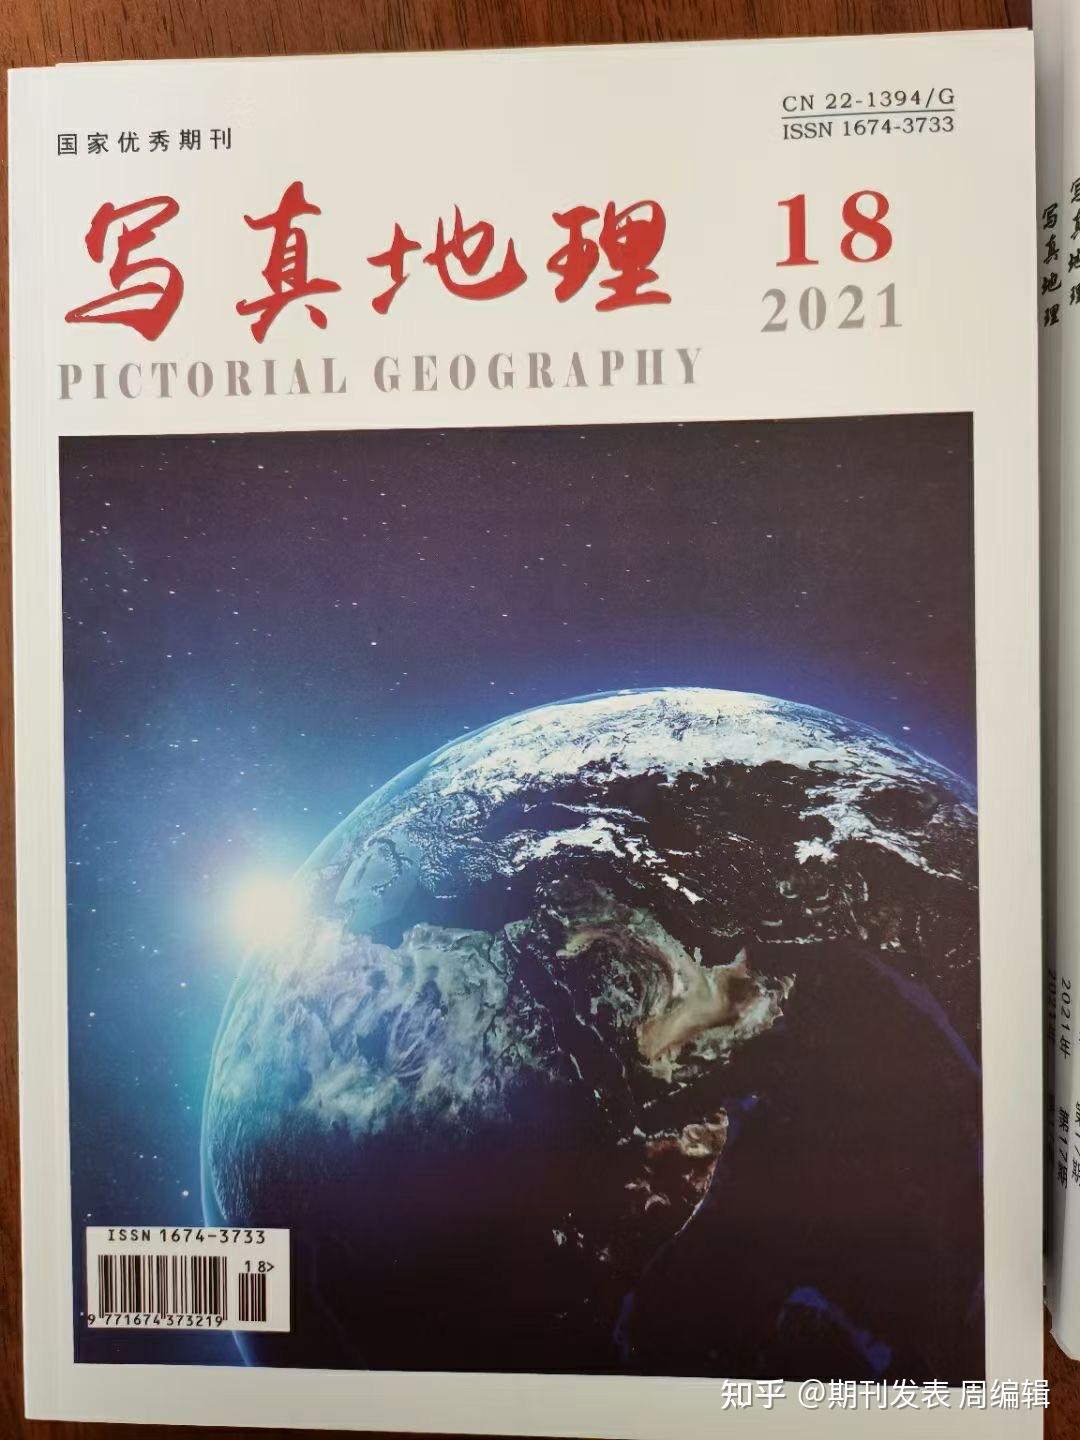 《写真地理》万方,出刊快上网快.第17.18期今天寄出